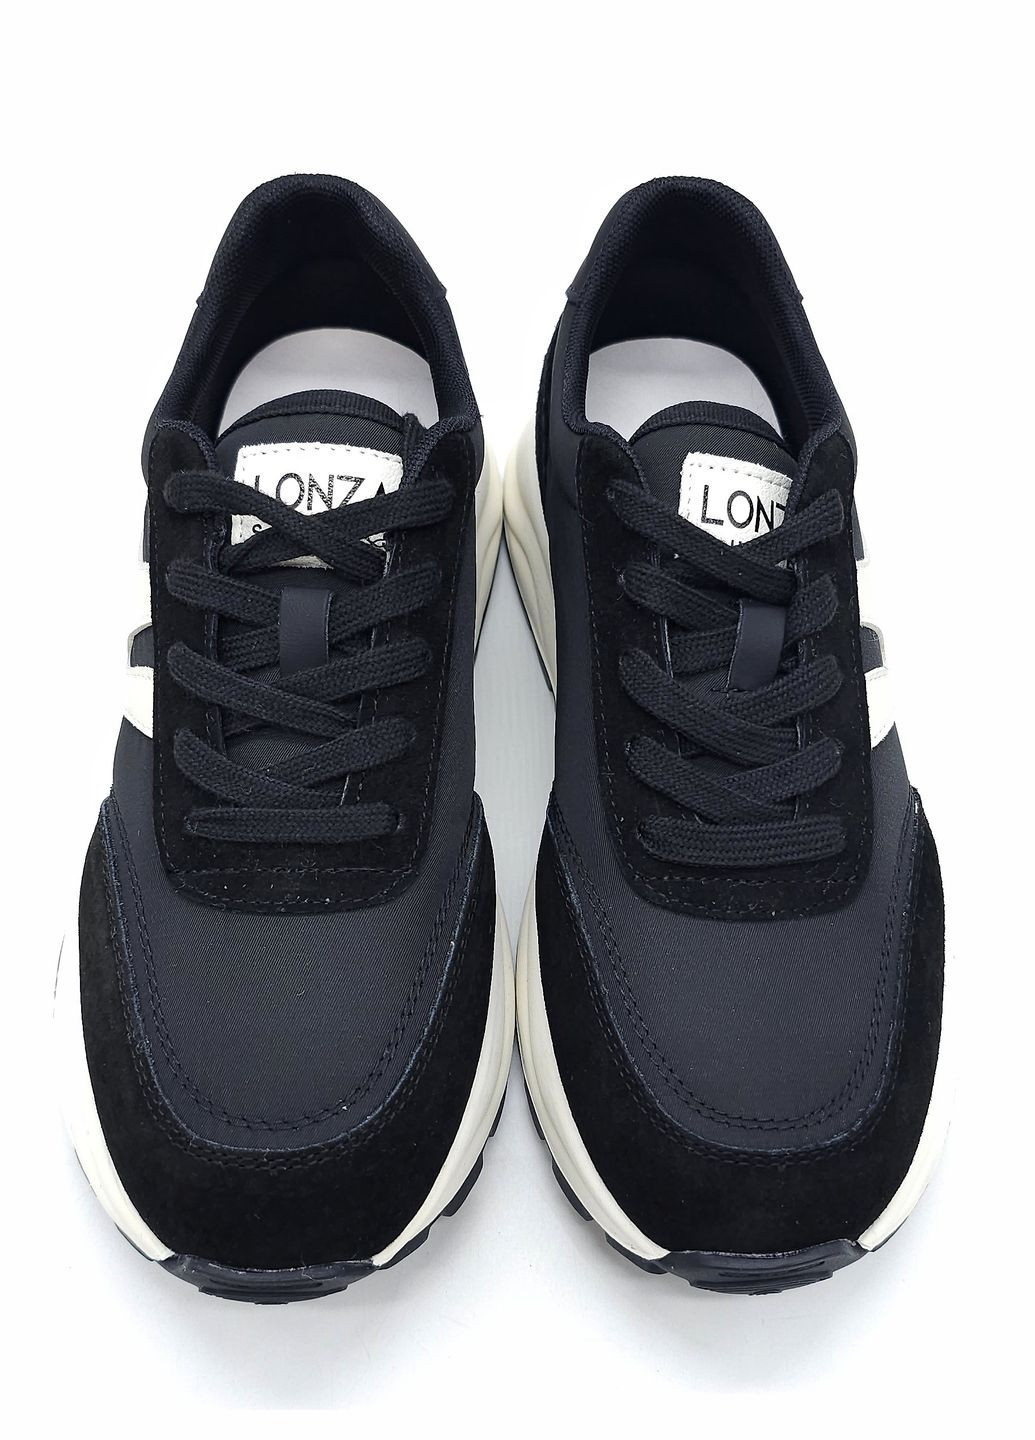 Черные всесезонные женские кроссовки черные кожаные l-11-54 23 см(р) Lonza